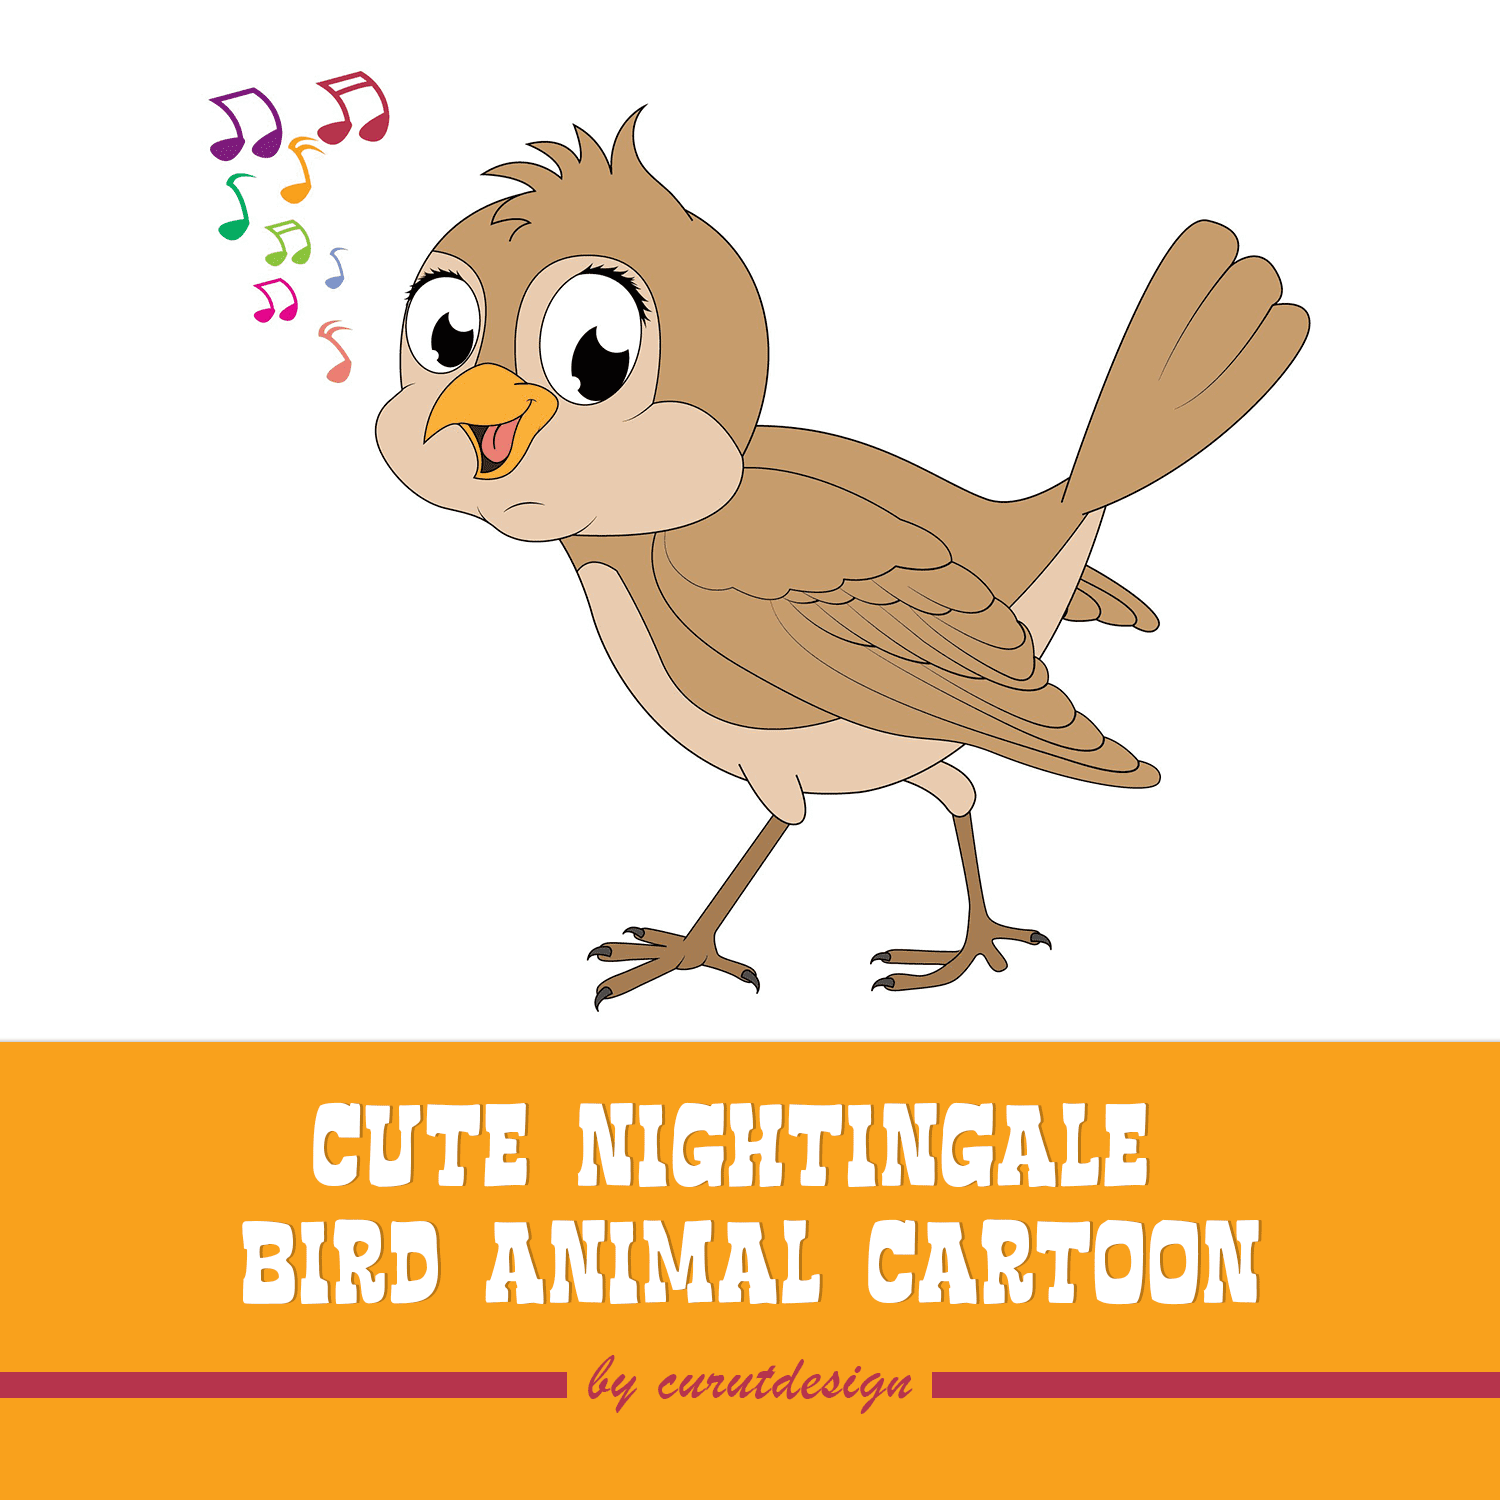 cute nightingale bird animal cartoon cover.